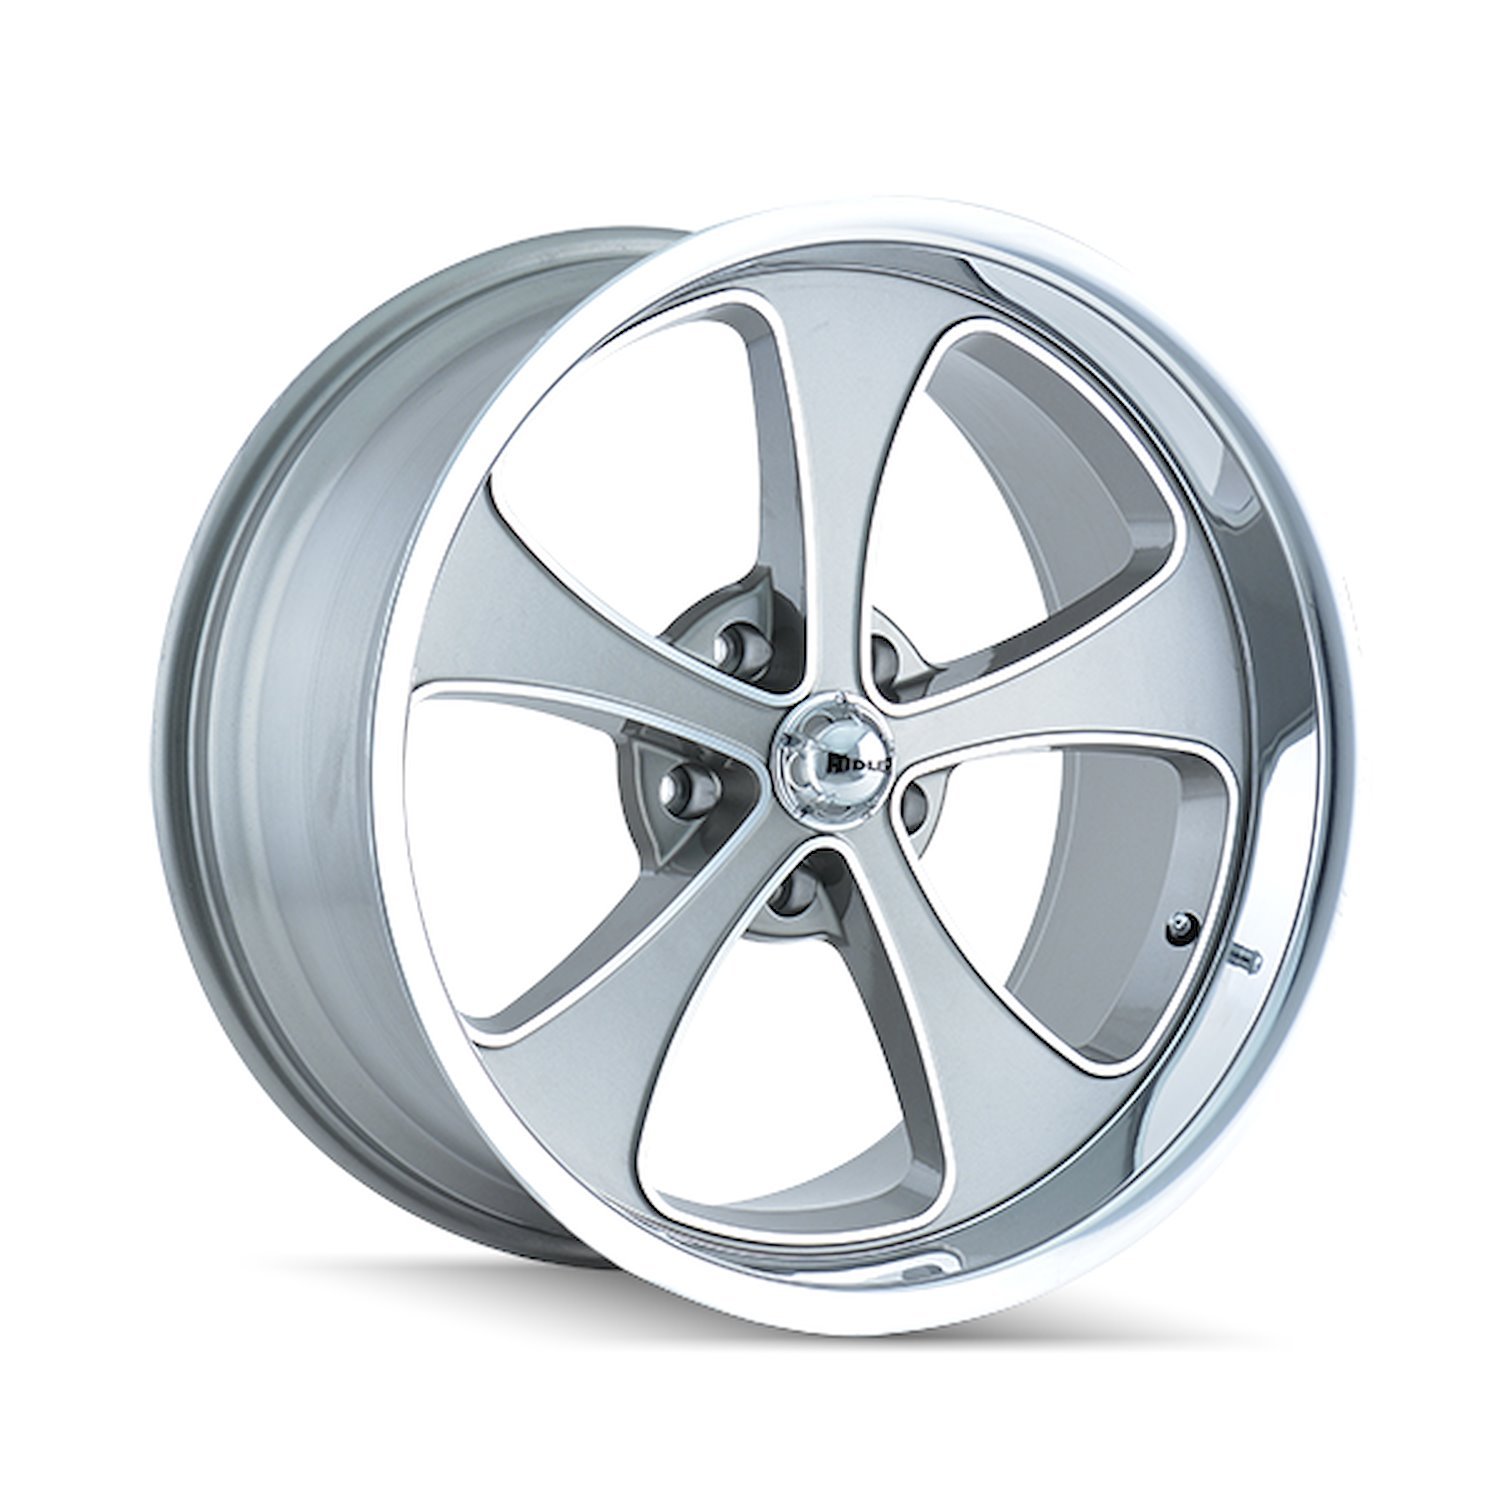 645-8865GP 645-Series Wheel [Size: 18" x 8"] Gloss Grey Machined/Polished Finish